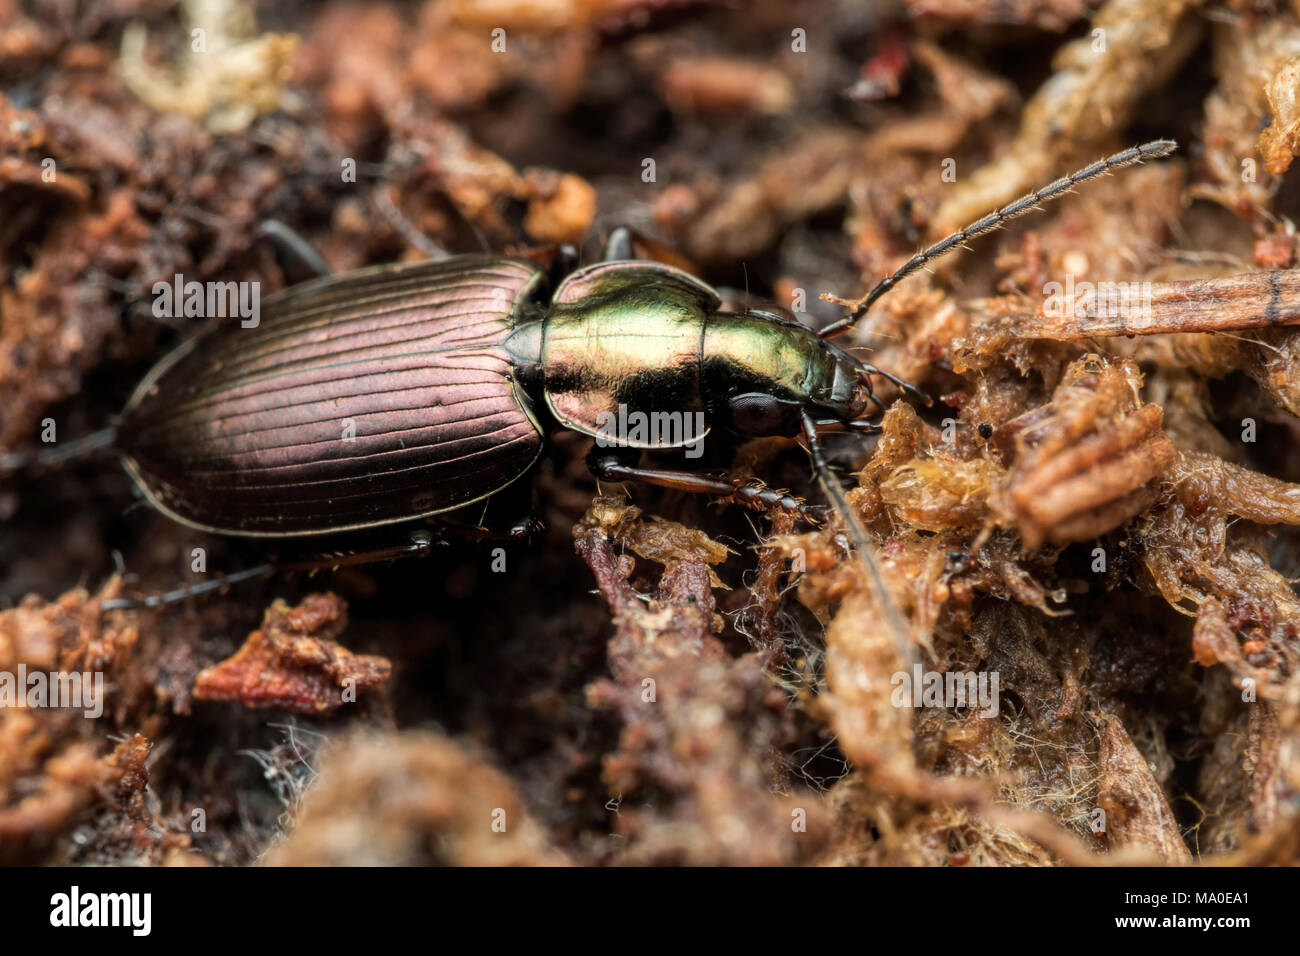 Escarabajo de tierra ( Agonum muelleri) apoyado en el suelo de los bosques. Tipperary, Irlanda Foto de stock